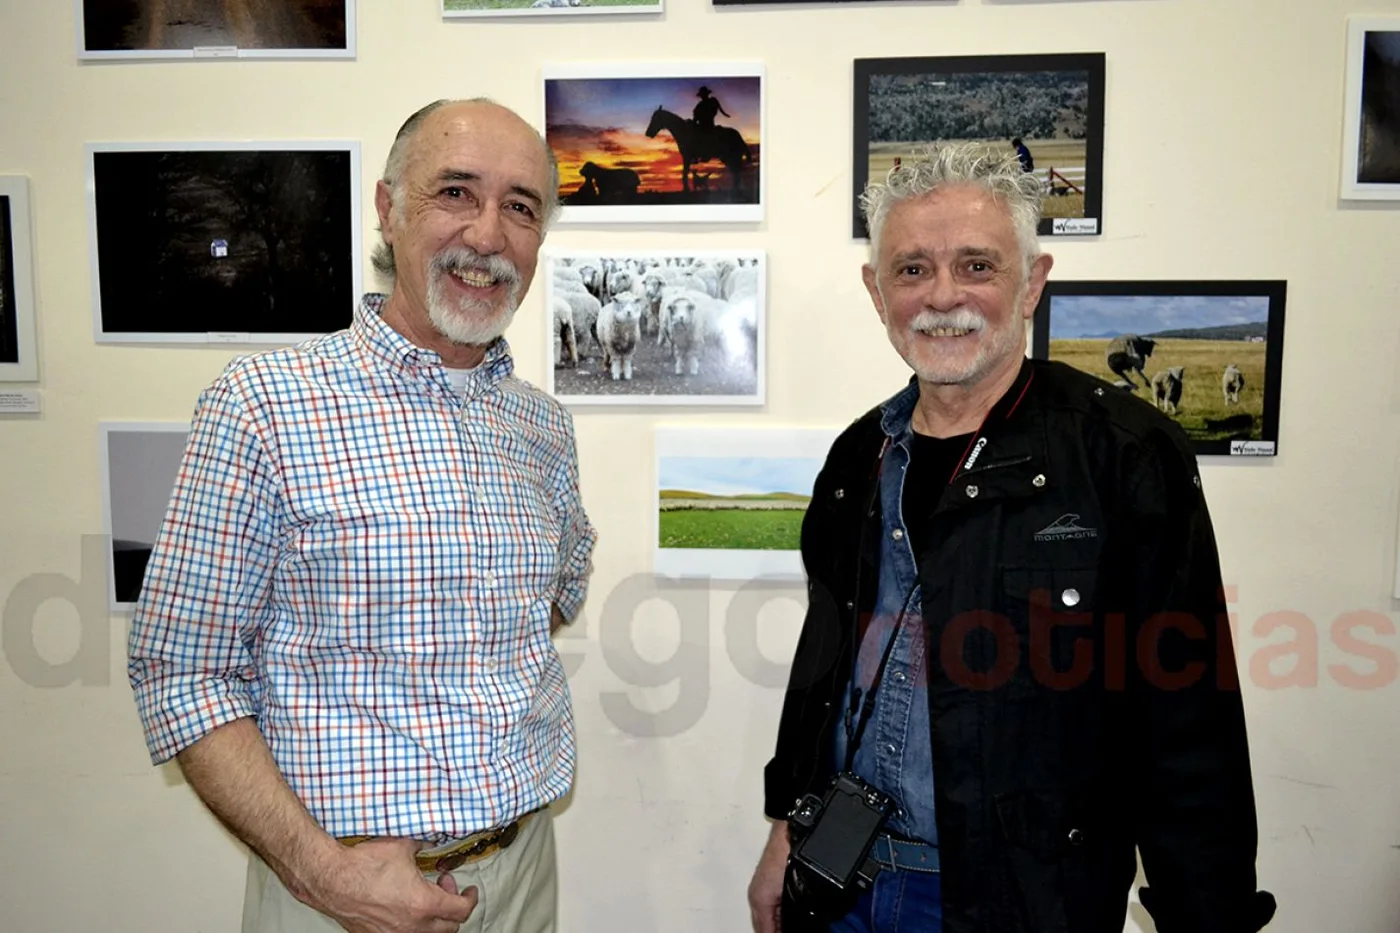 El Dr. Fabián Zanini, junto al fotógrafo Alfio Baldovin posaron en la apertura de la muestra “Paisajes y labores del campo fueguino”.